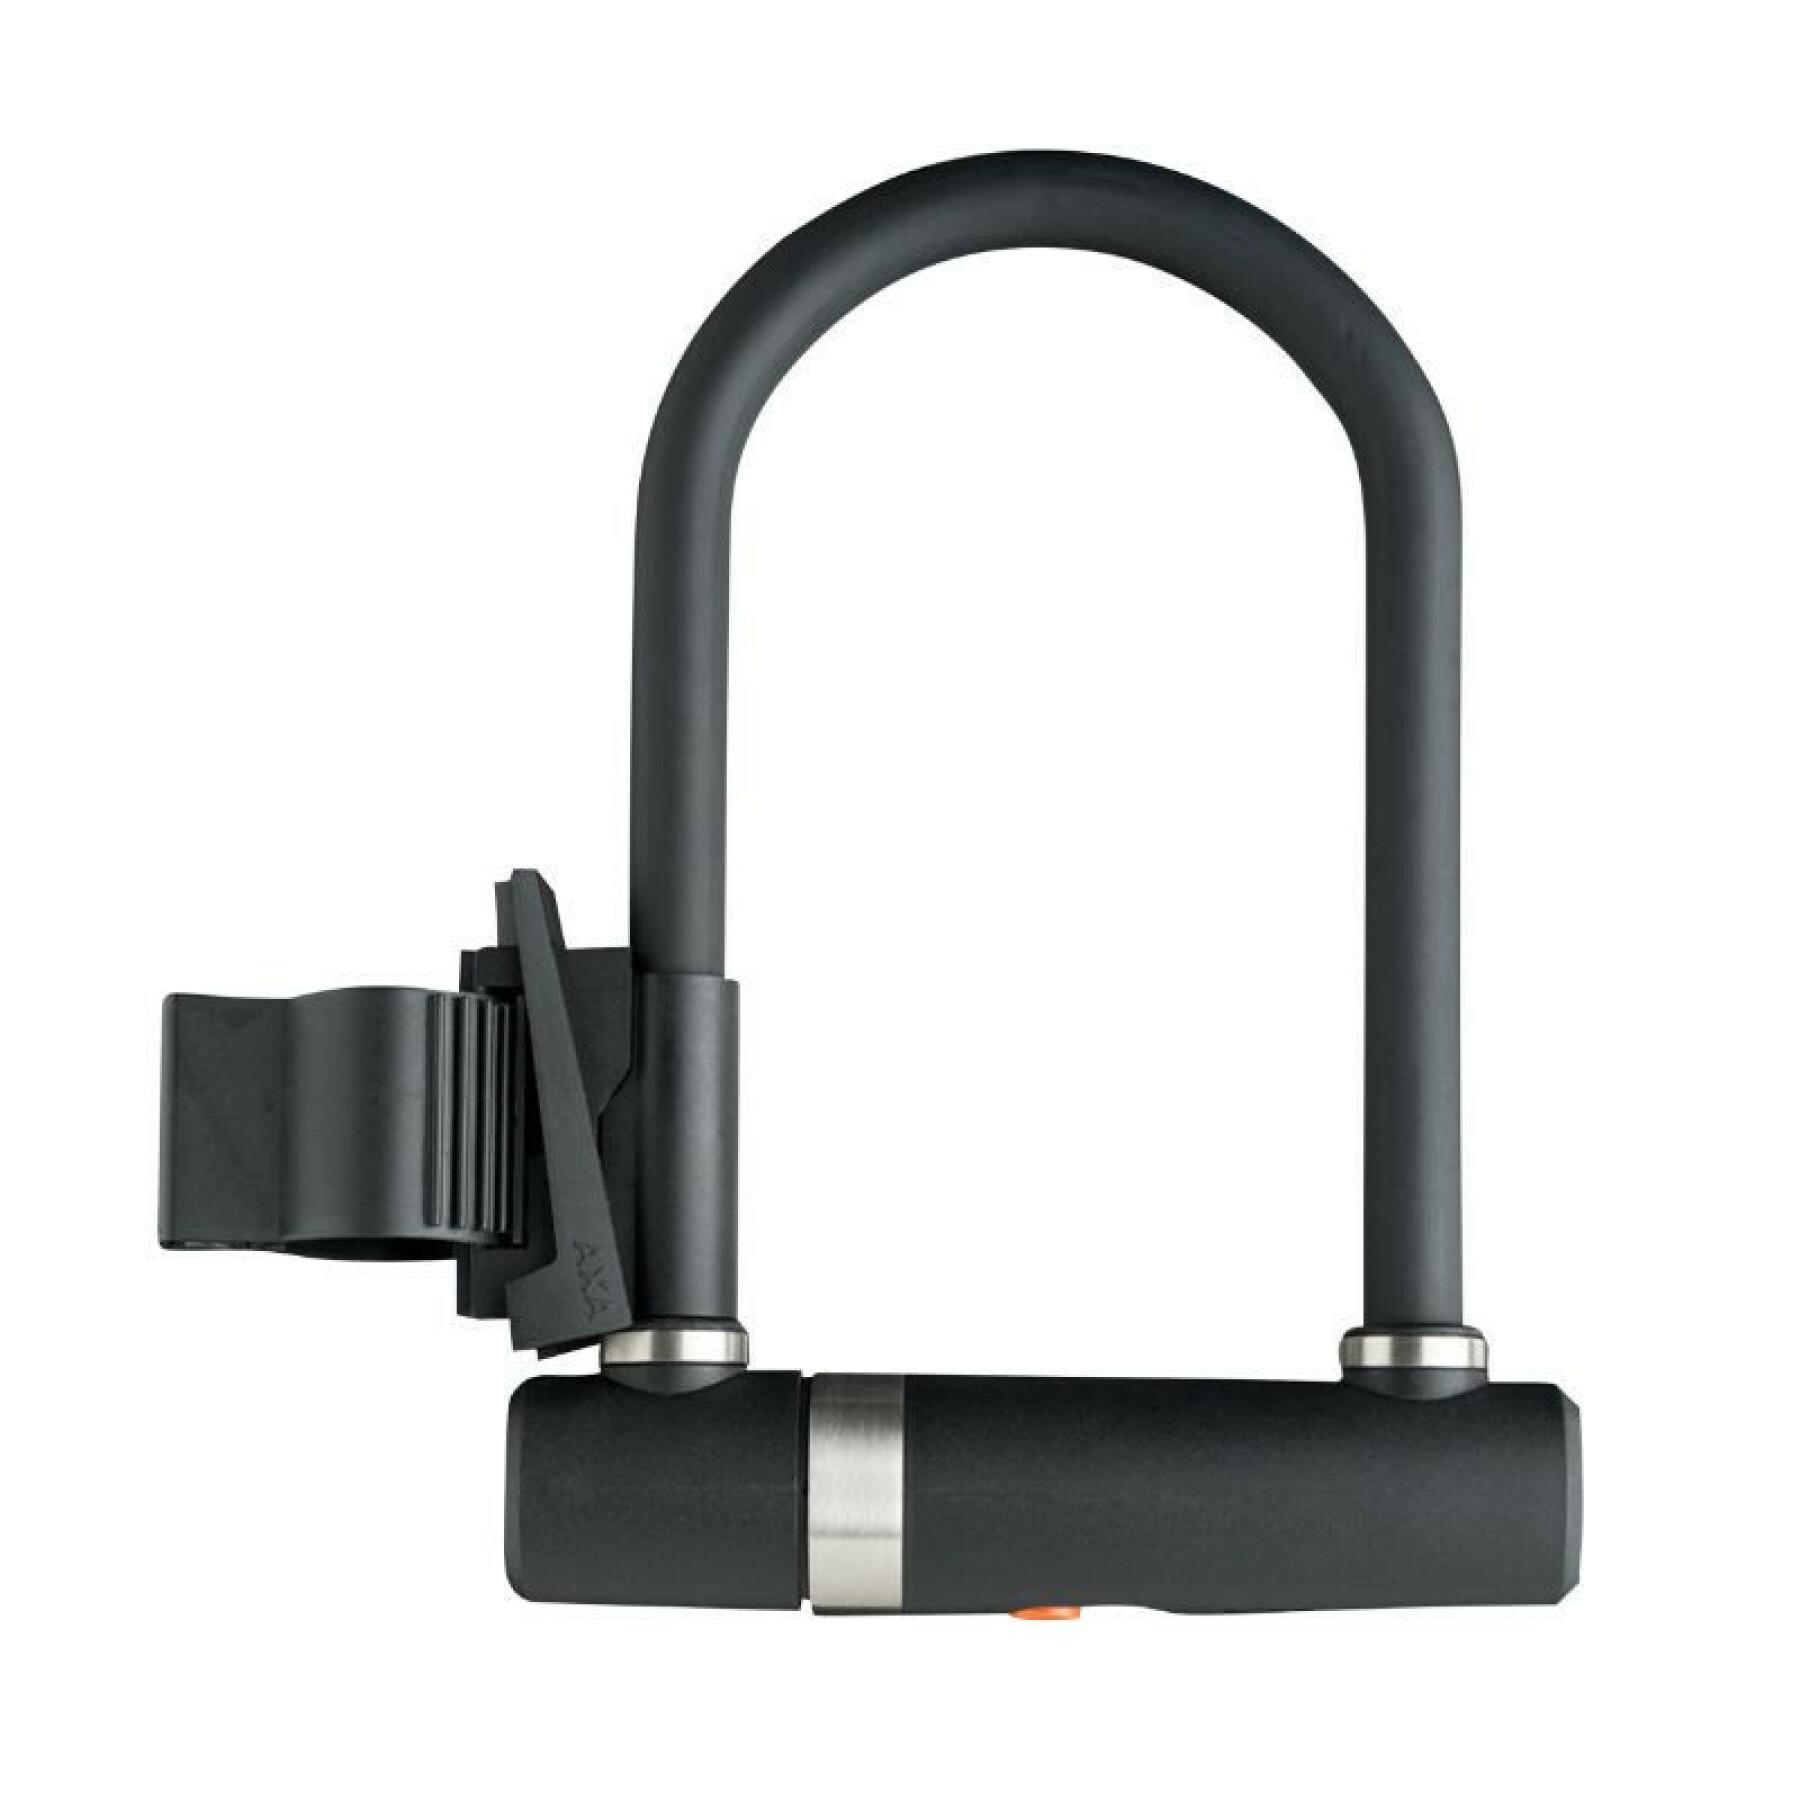 Fietsslot met sleutel en kabel - reproductie van sleutels mogelijk - ideaal voor fietsen Axa-Basta Newton Pro Sold Secure Niveau Silver